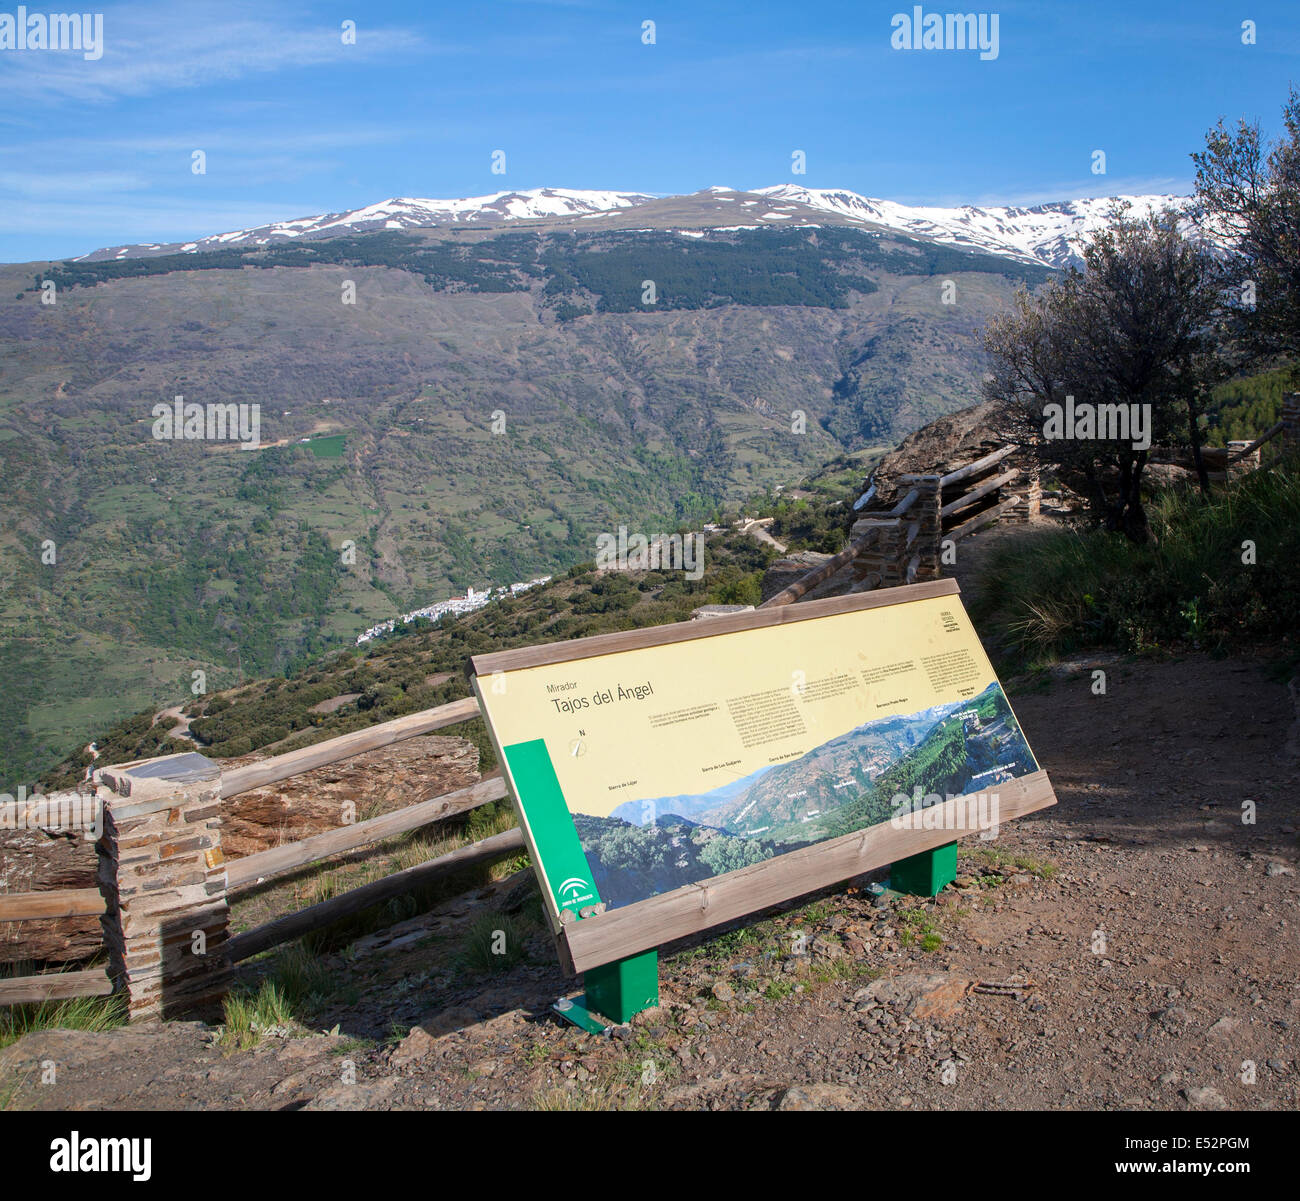 Vue panoramique du paysage de montagnes de Sierra Nevada dans l'Alpujarras élevé, près de Capileira, Province de Grenade, Espagne. Banque D'Images